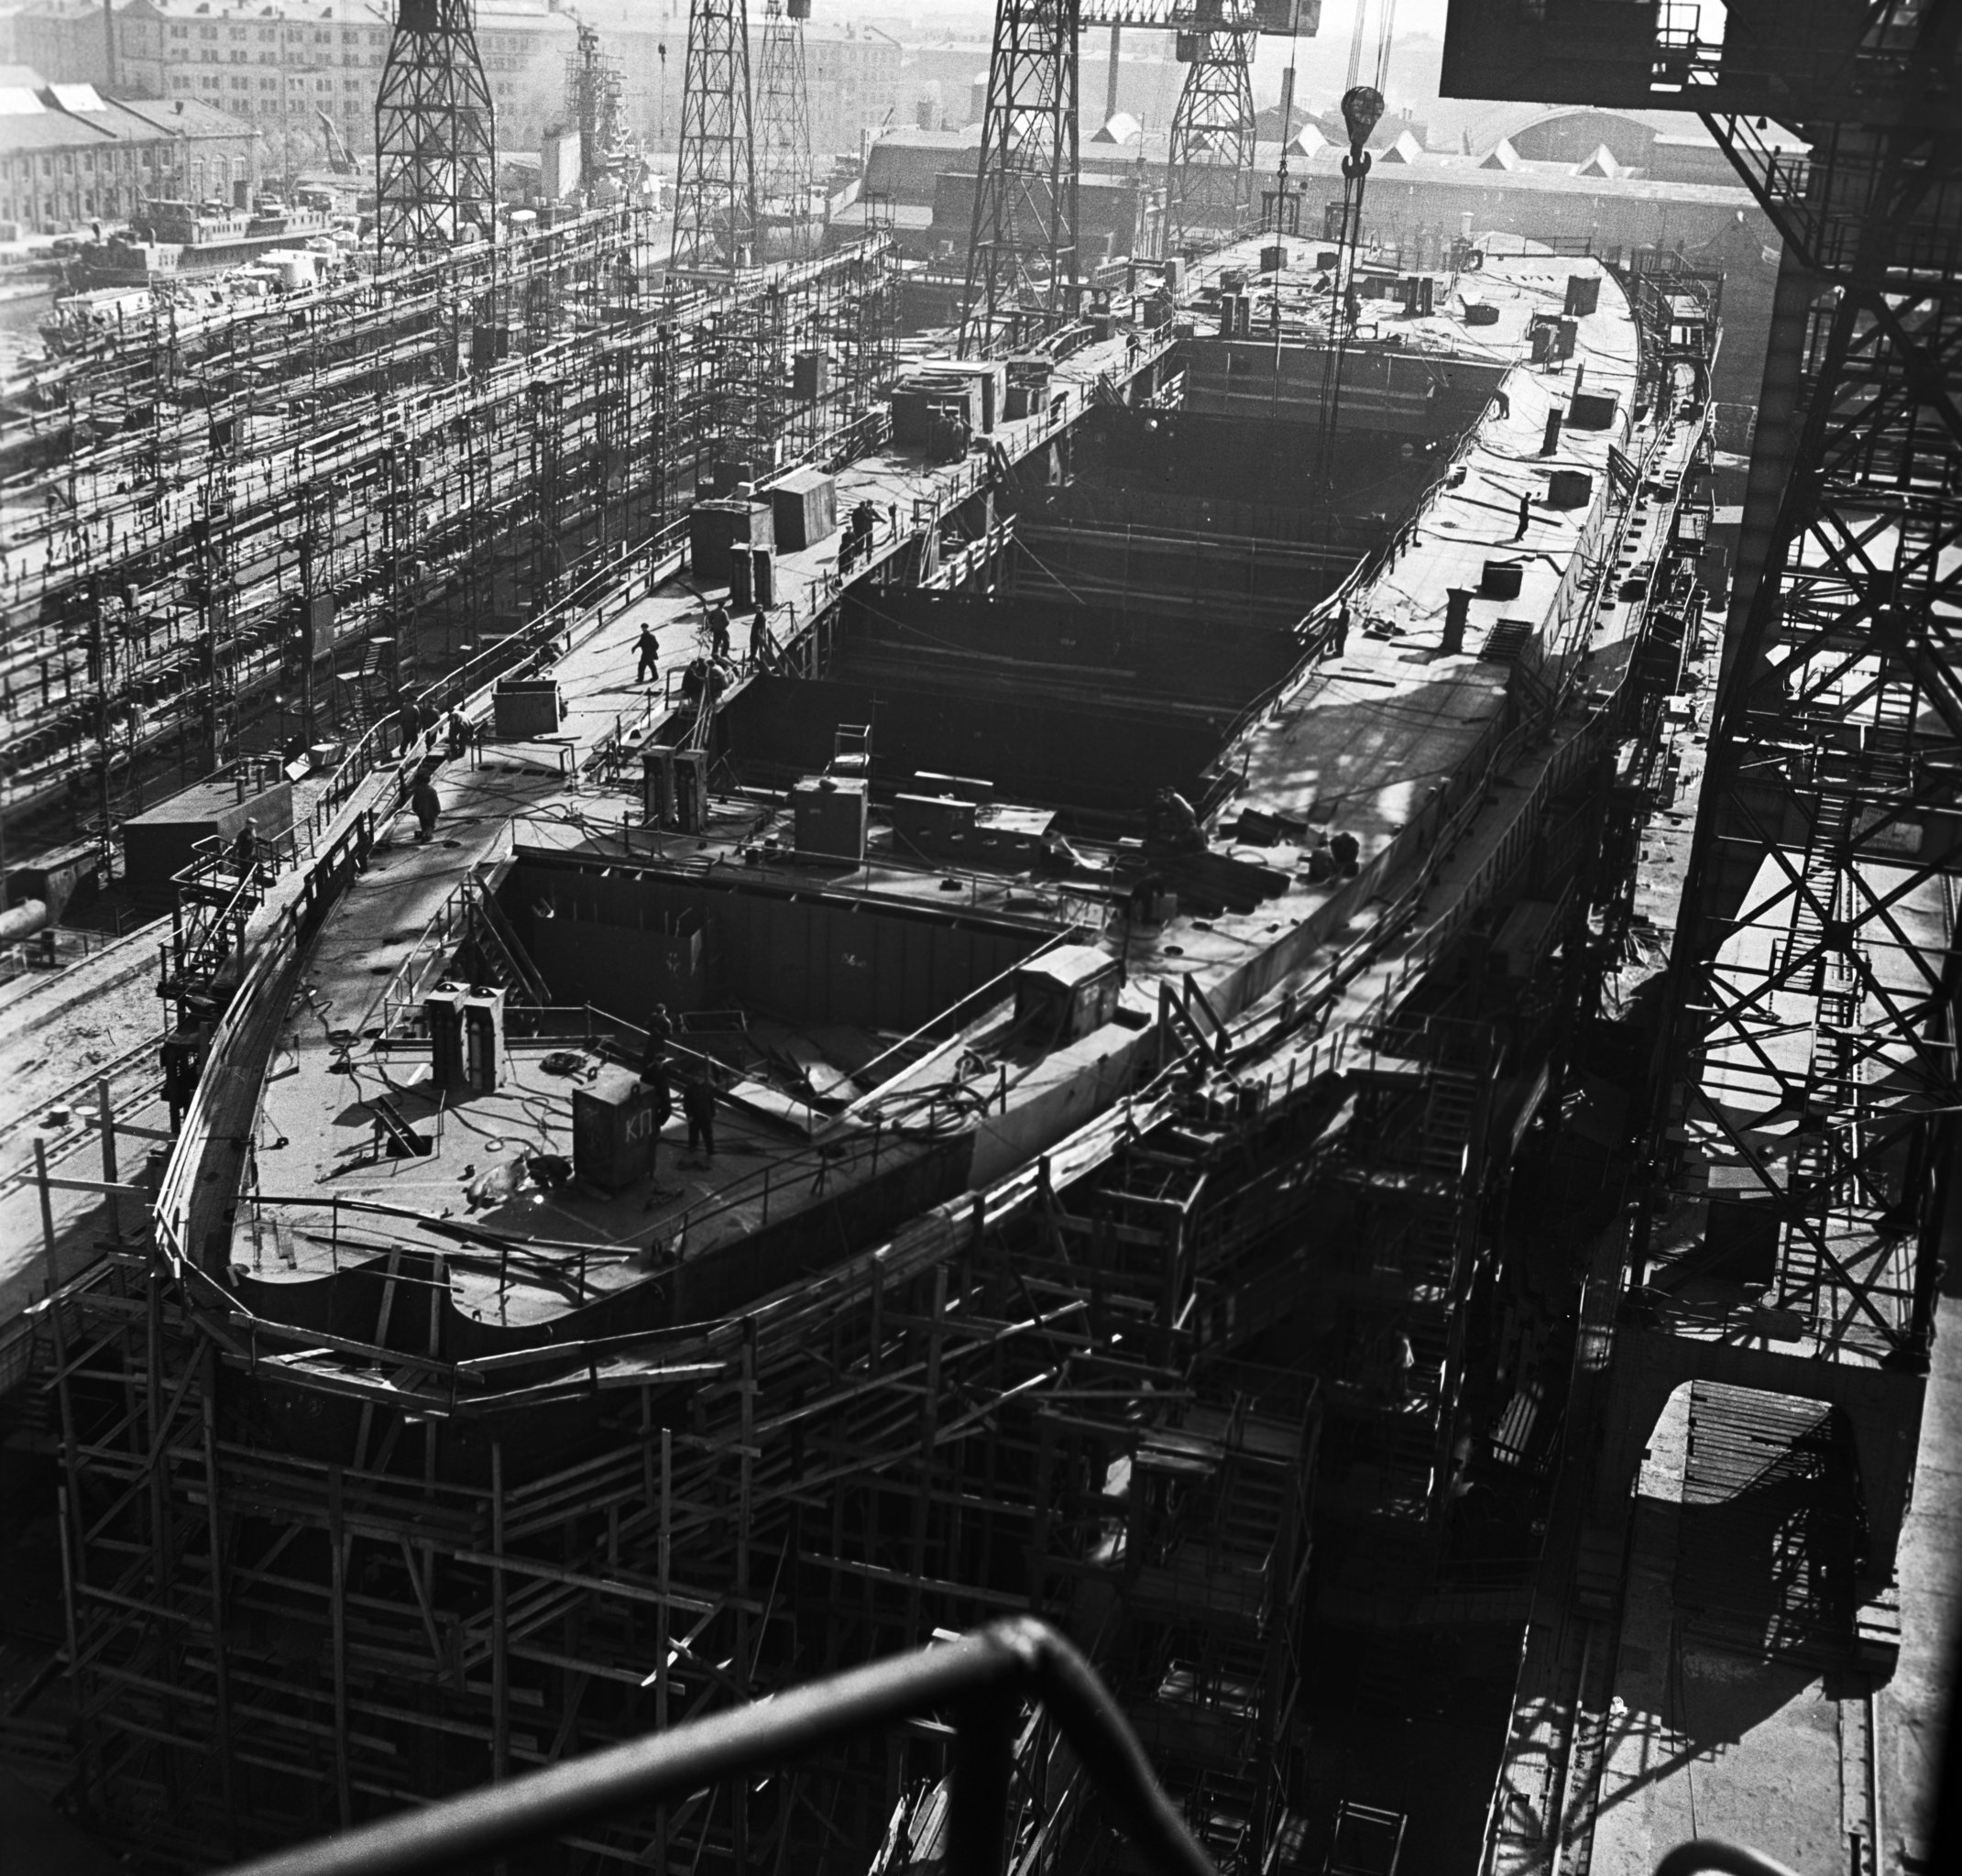 Строительство атомного ледокола "Ленин" - первое в мире надводное судно с ядерной силовой установкой. Ленинград (Санкт-Петербург), 1957.